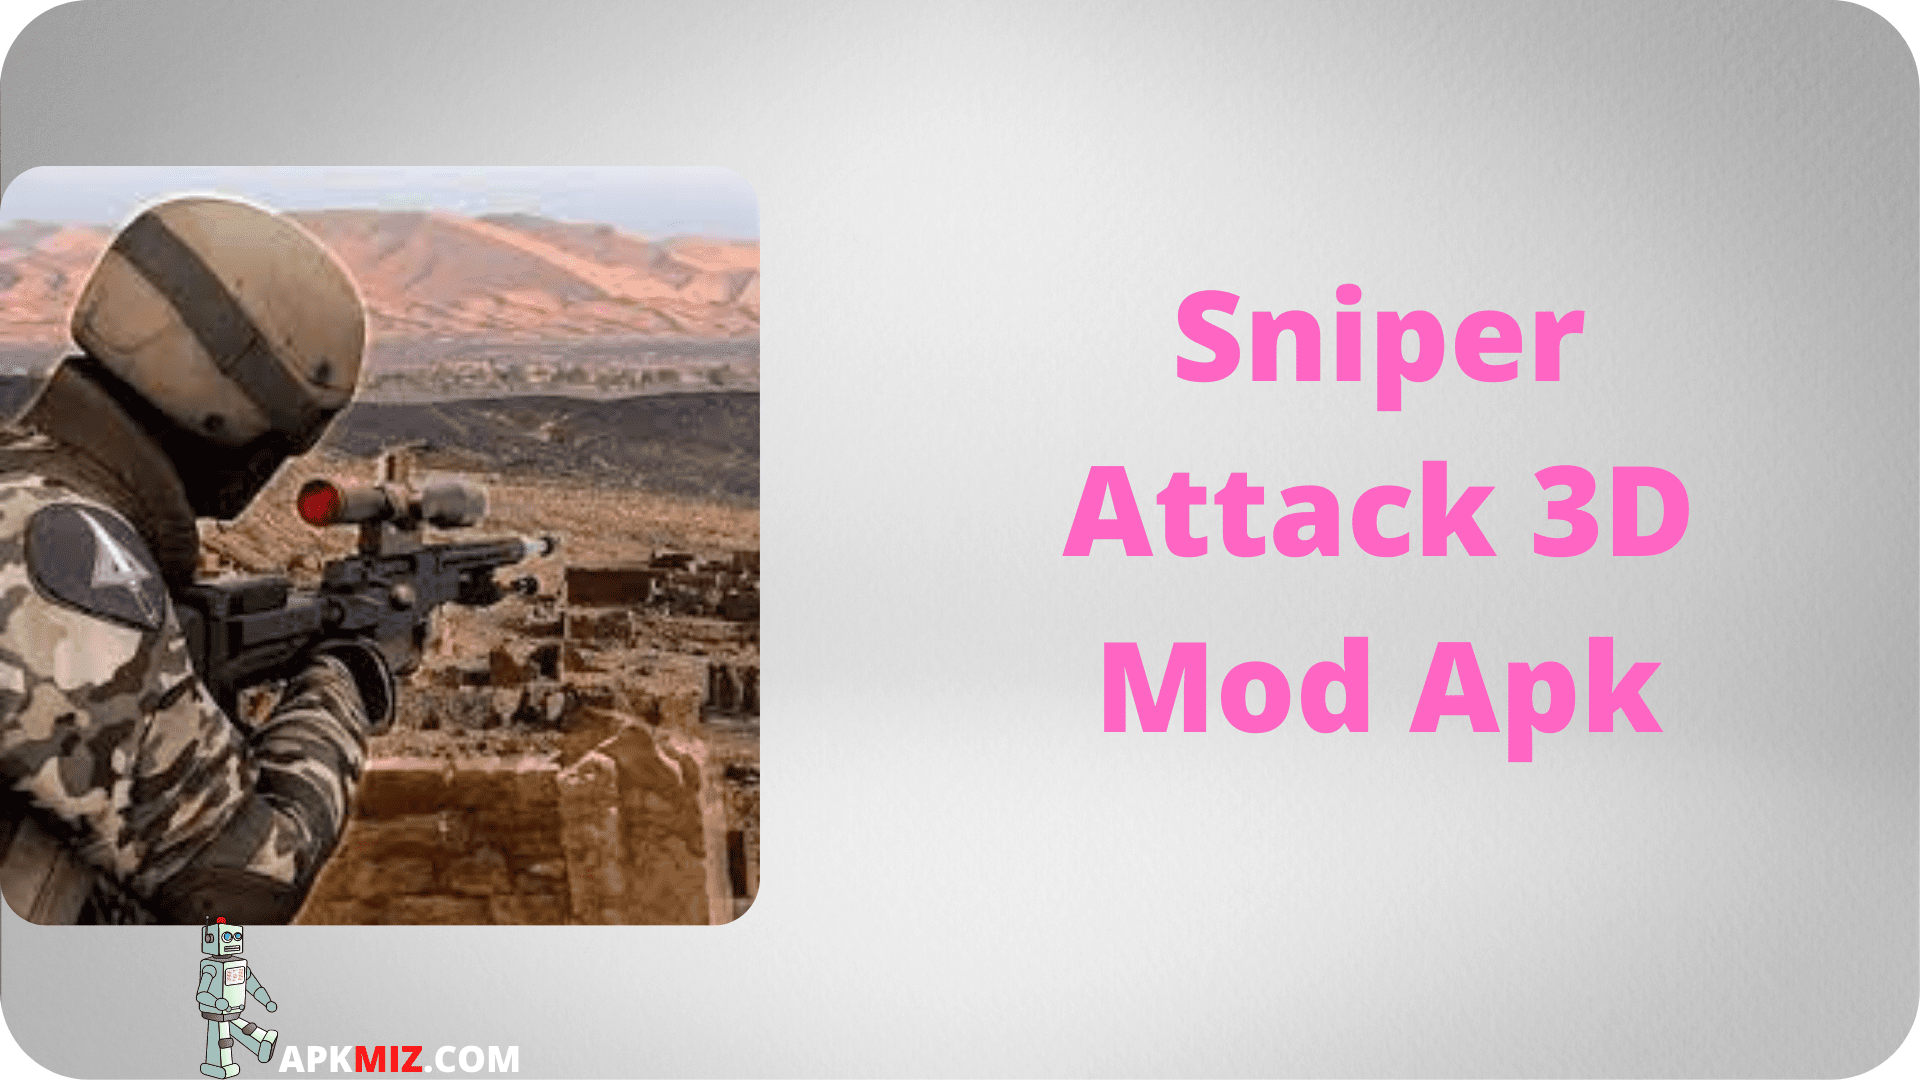 Sniper Attack 3D Mod Apk